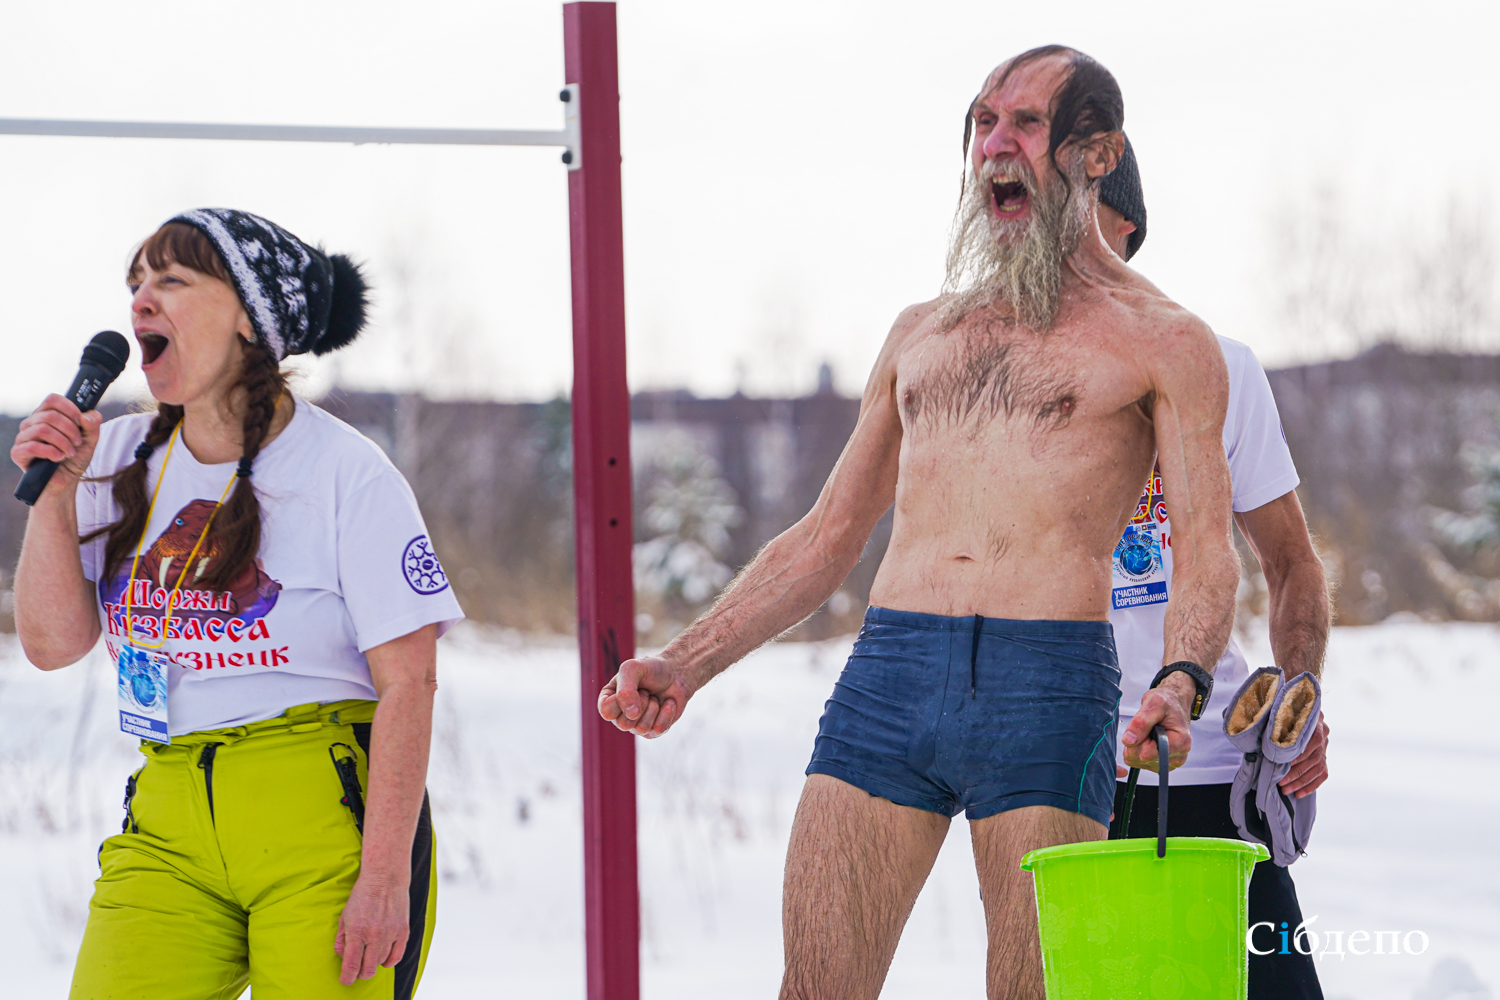 Азарт, обнажённые спортсмены и ледяная вода: как в Кемерове сибиряки сразились за право быть лучшими